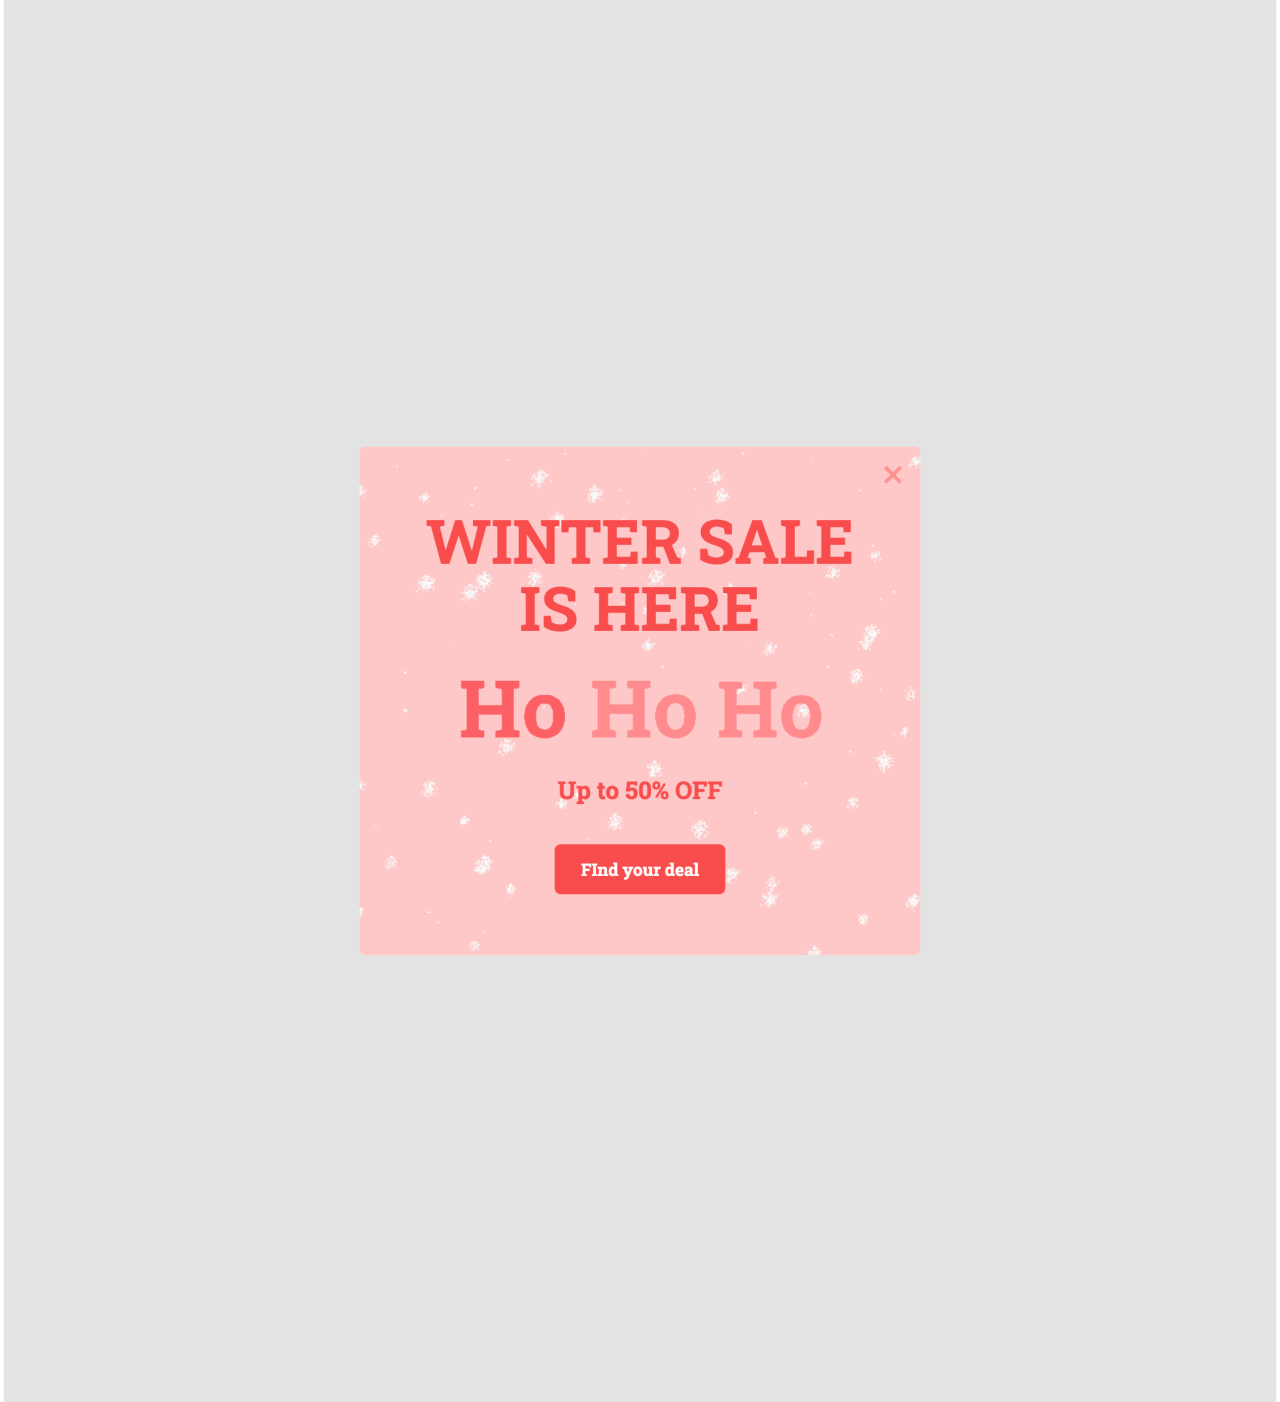 Oferta promocional de invierno plantilla creada por MailerLite